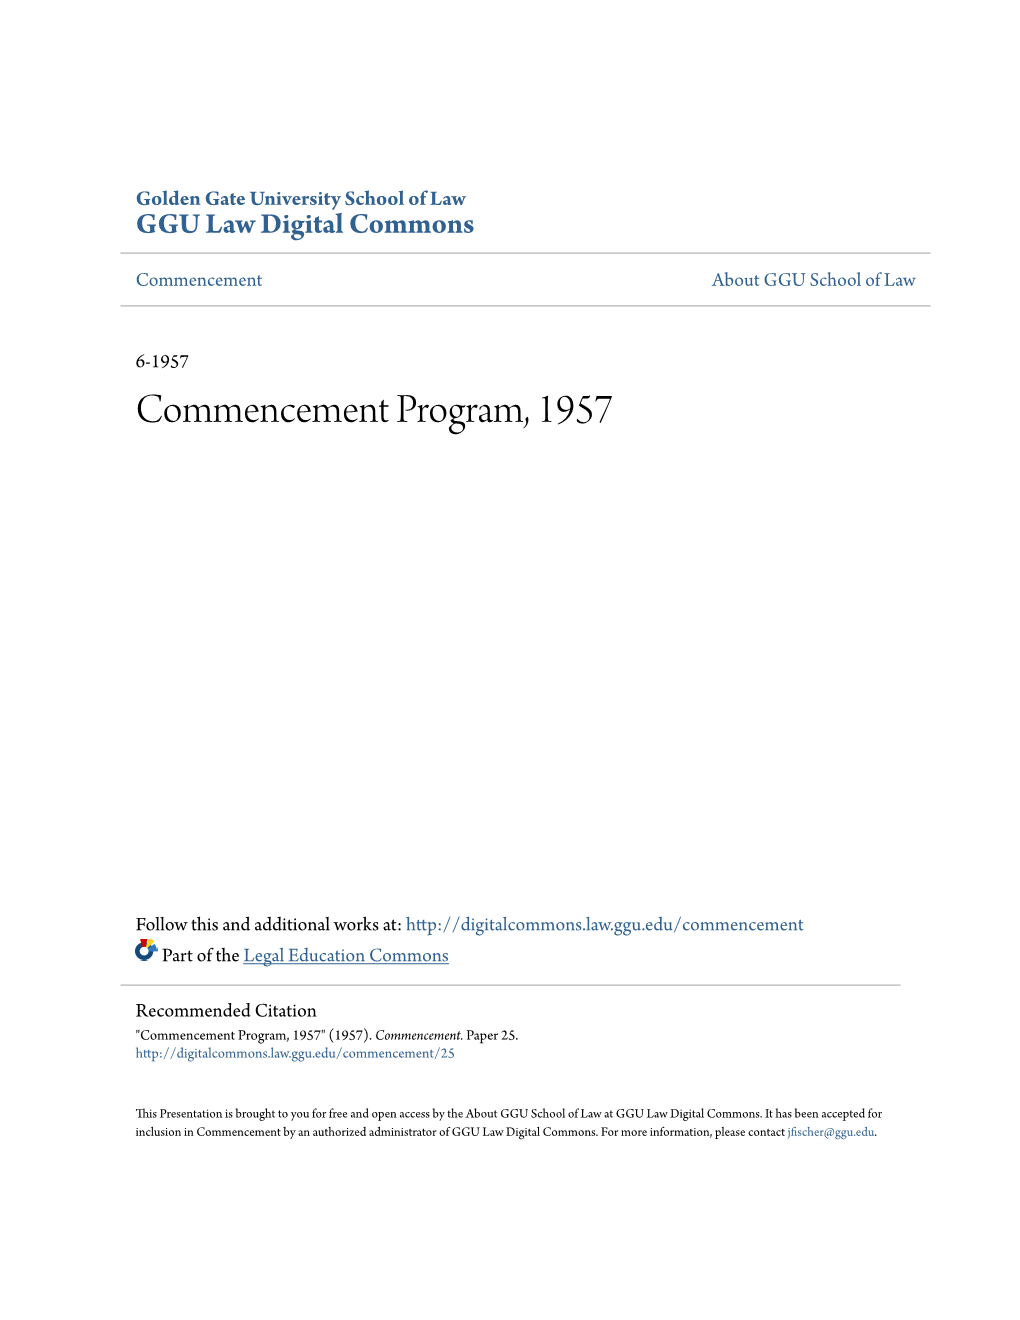 Commencement Program, 1957